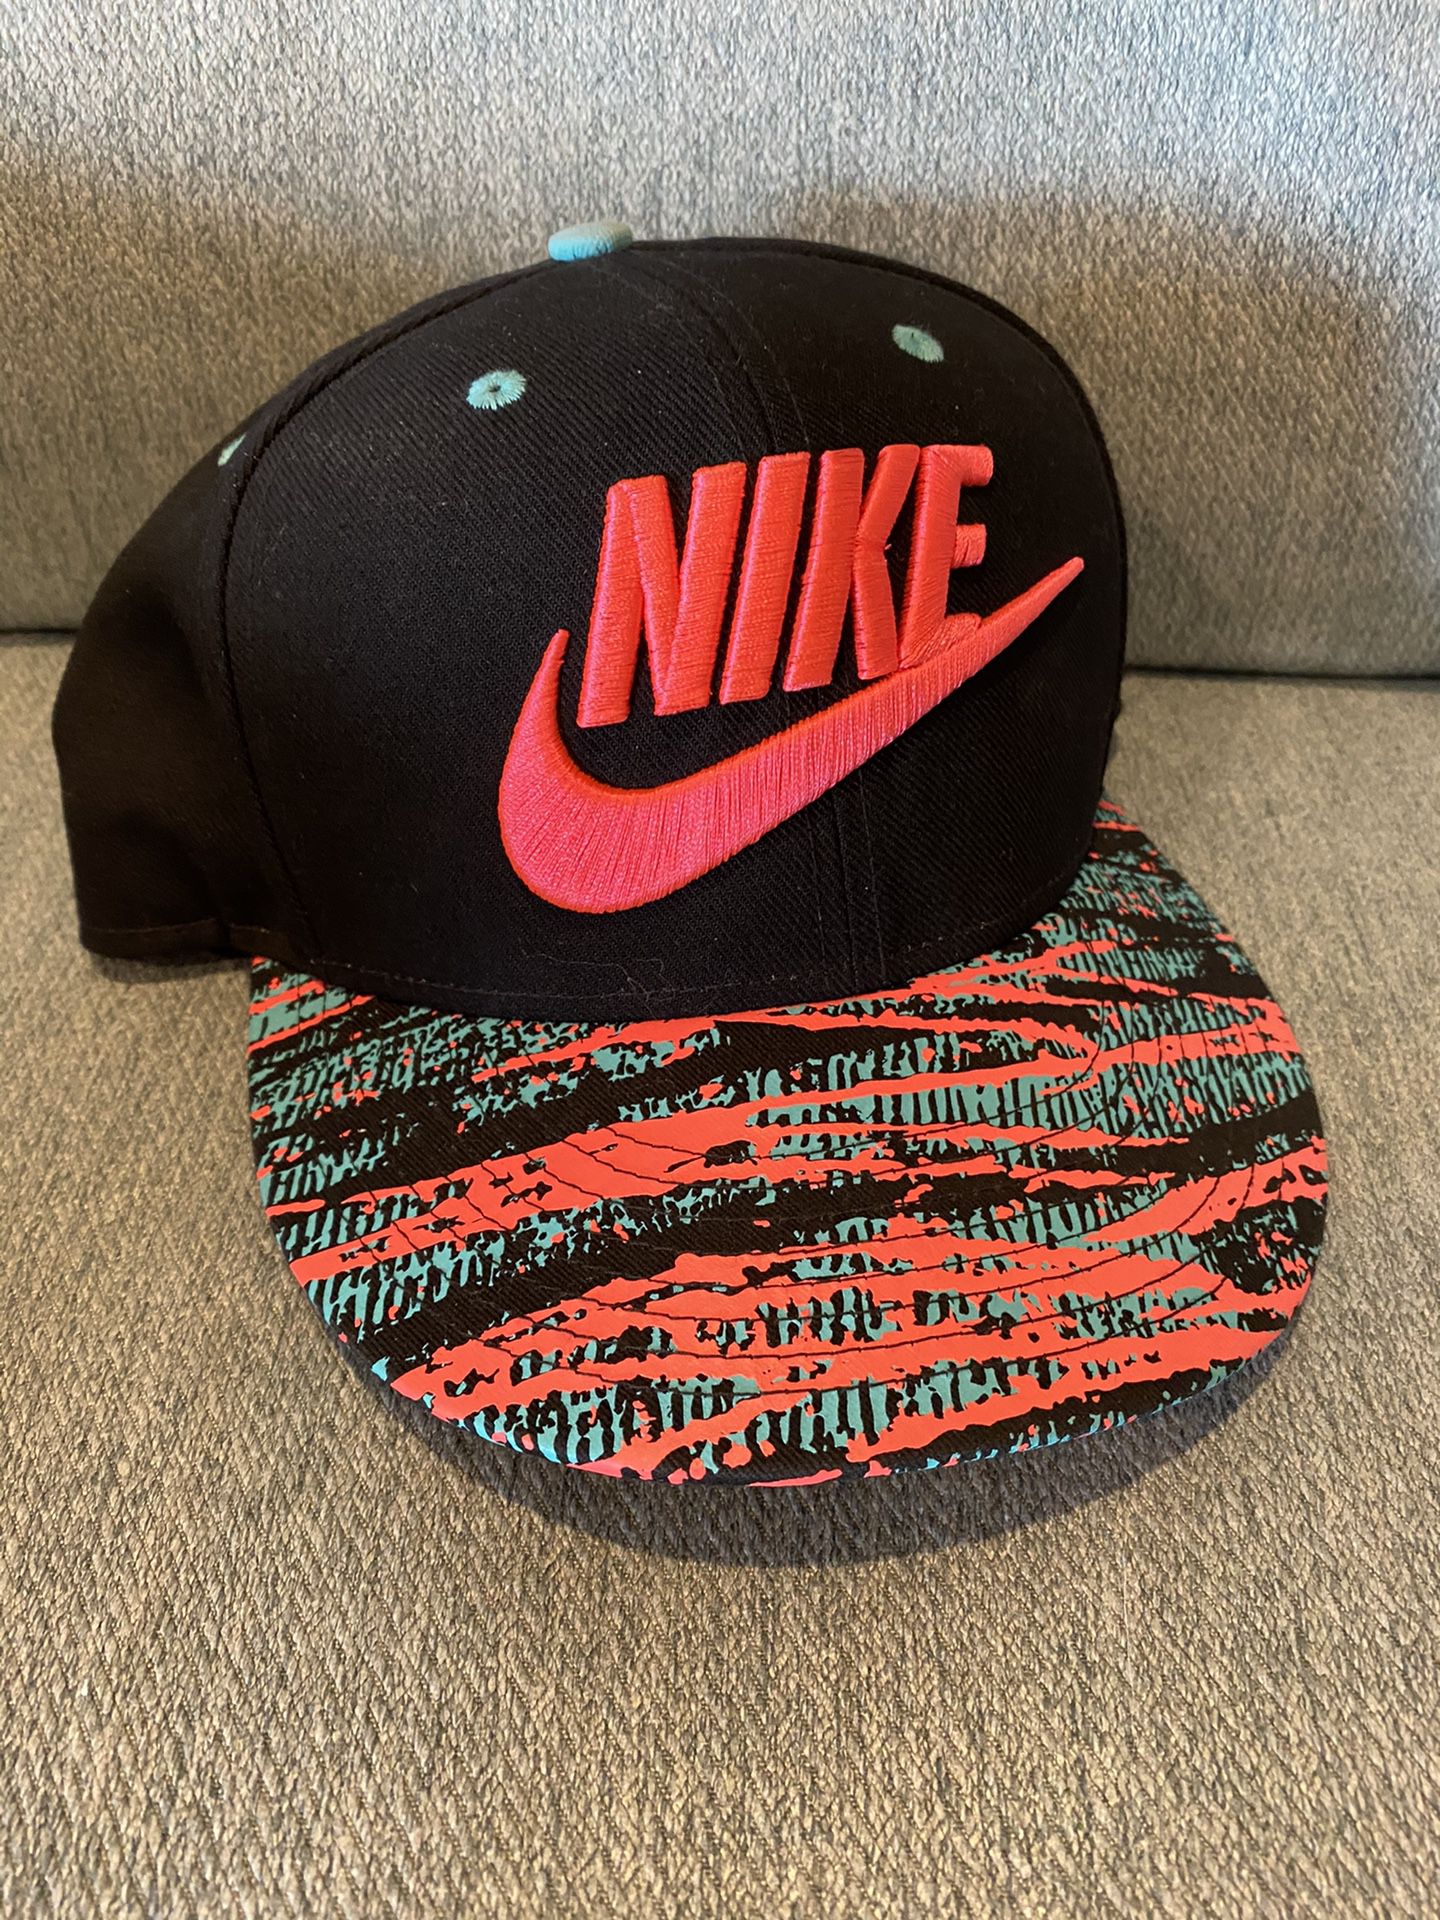 Nike True fit SnapBack pink & teal hat